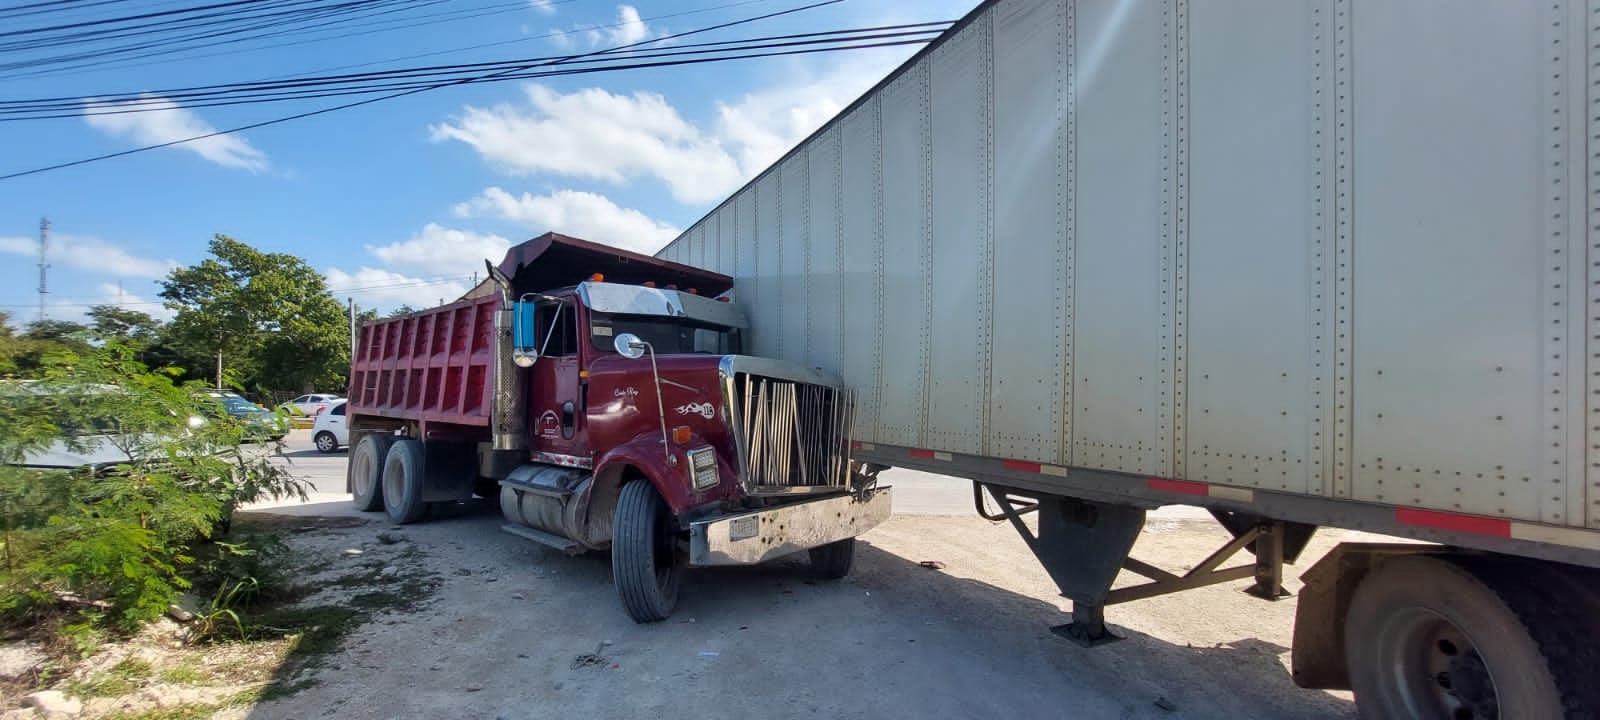 Reportan choque entre dos camiones en Playa del Carmen